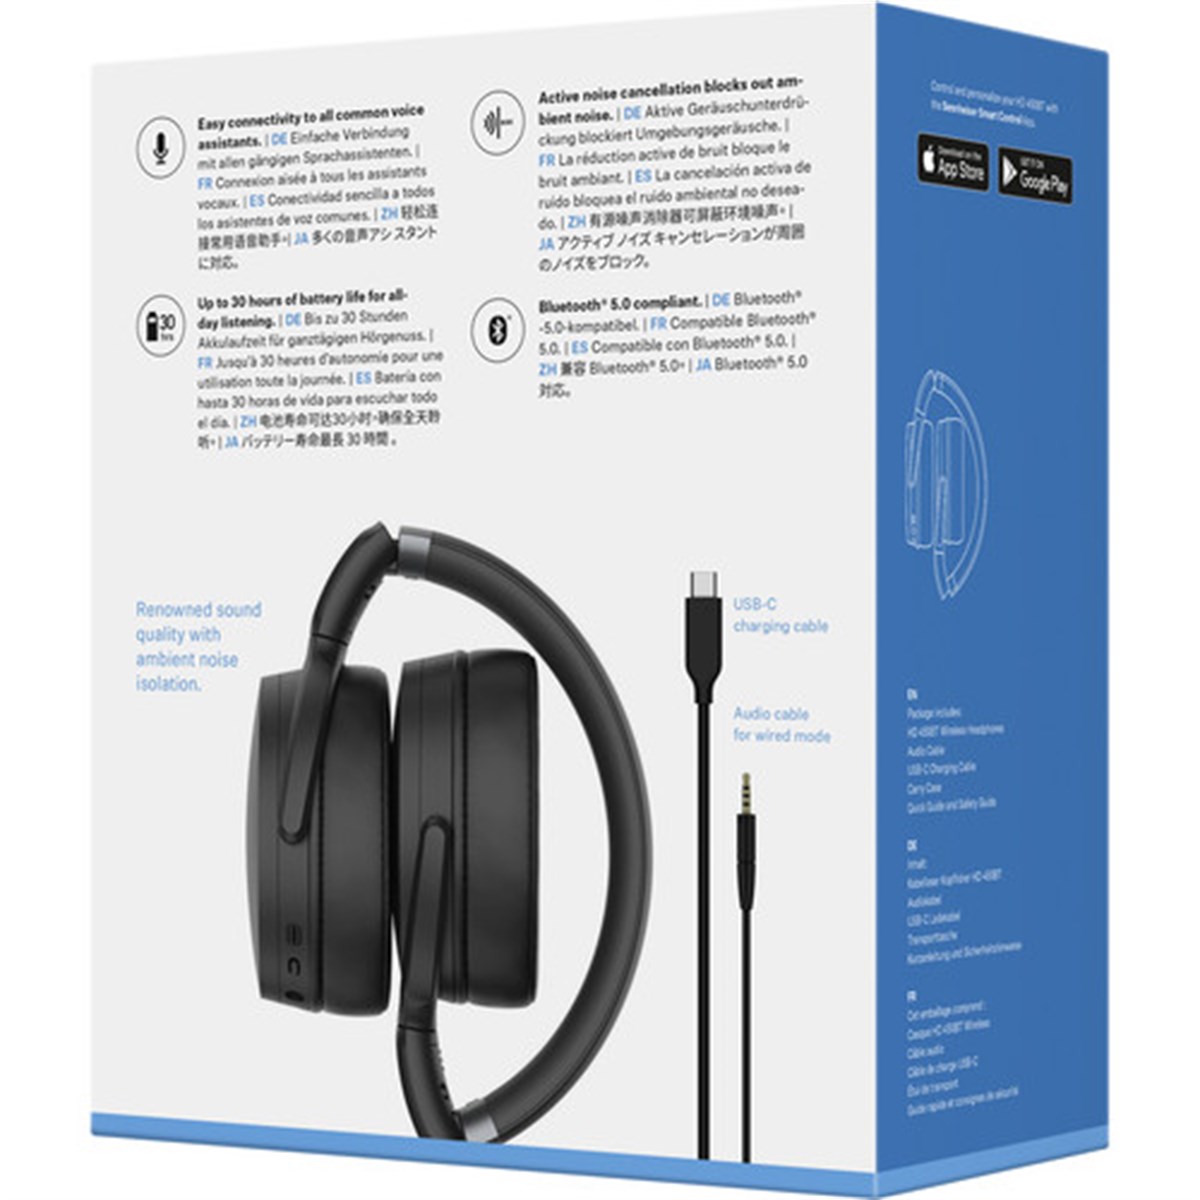 Sennheiser HD 450 BT ANC Siyah Kulak Üstü Bluetooth Kulaklık